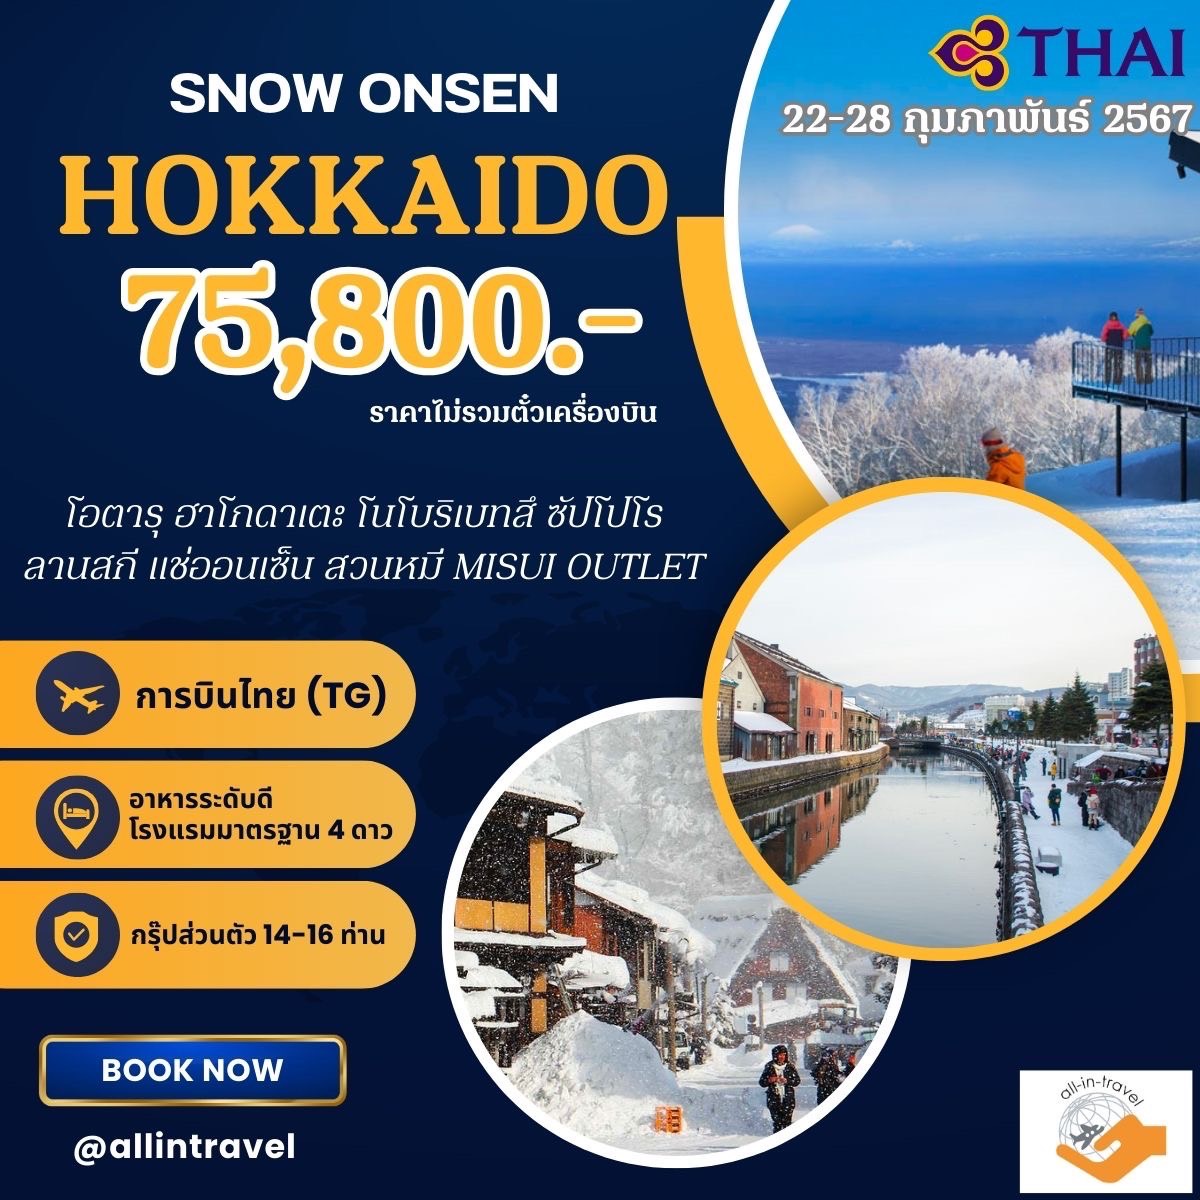 SNOW ONSEN HOKKAIDO